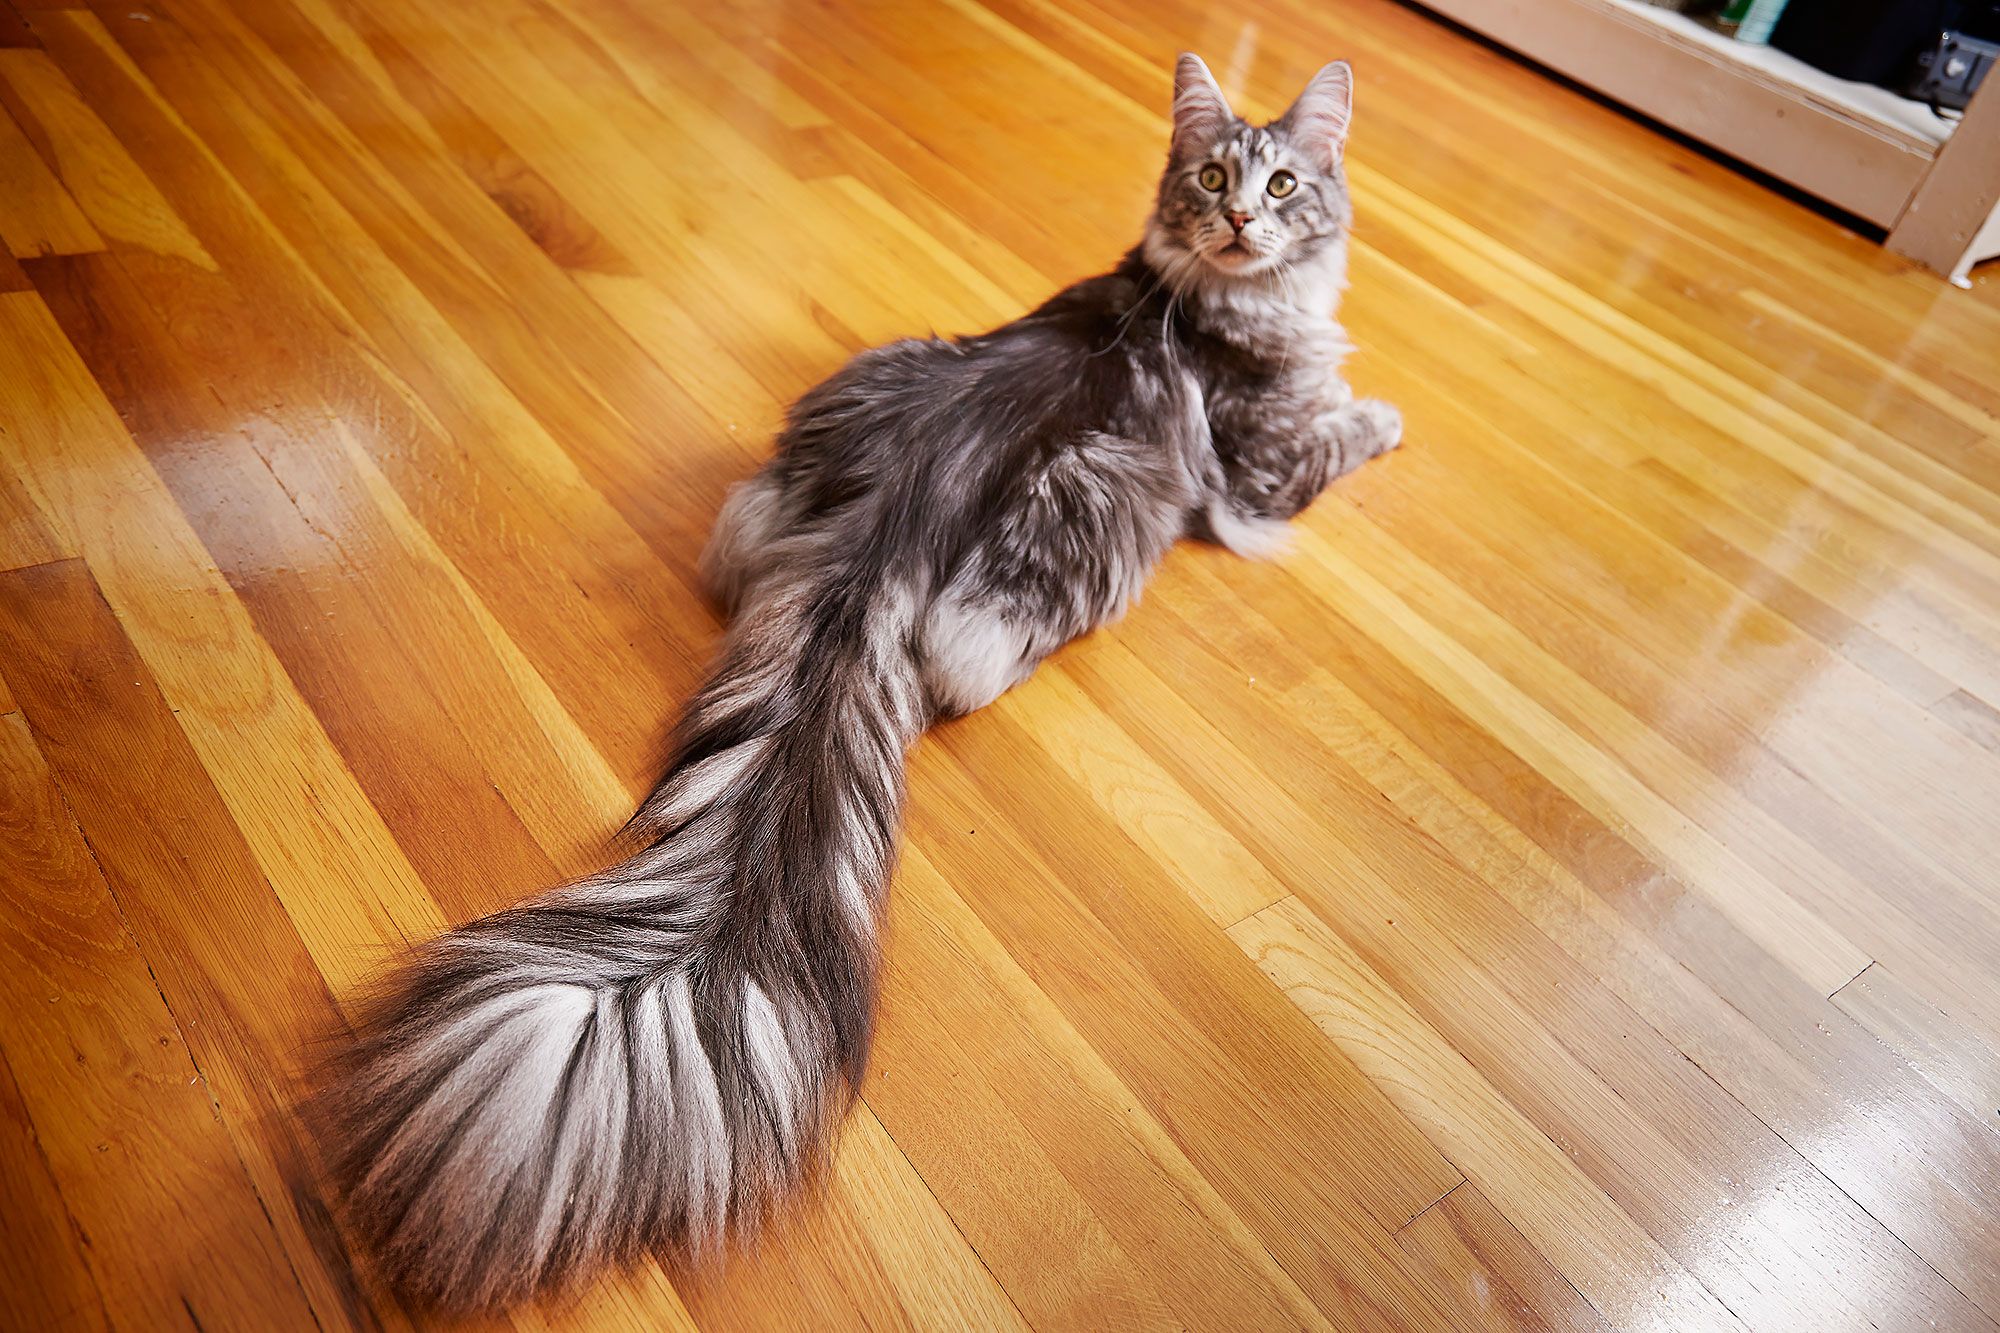 Занесенный в Книгу рекордов Гиннеса кот с самым длинным хвостом мейн-кун жи...